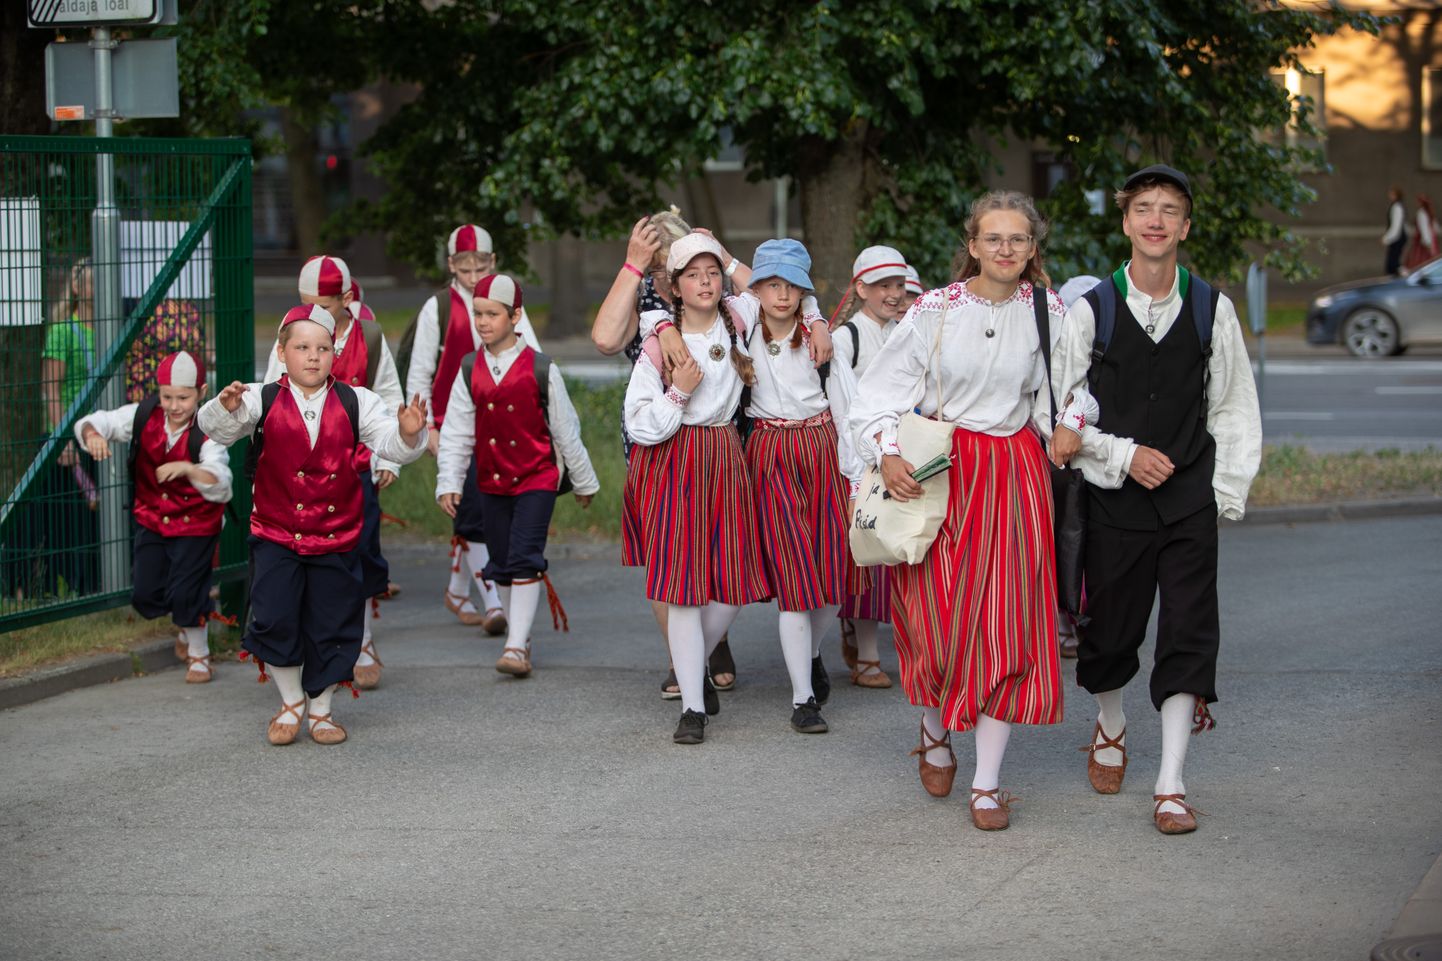 Algas 13. noorte tantsu- ja laulupidu “Püha on maa” tantsupeo esimese kontserdiga “Sillad”. Viljandimaalt osaleb seal 33 kollektiivi.